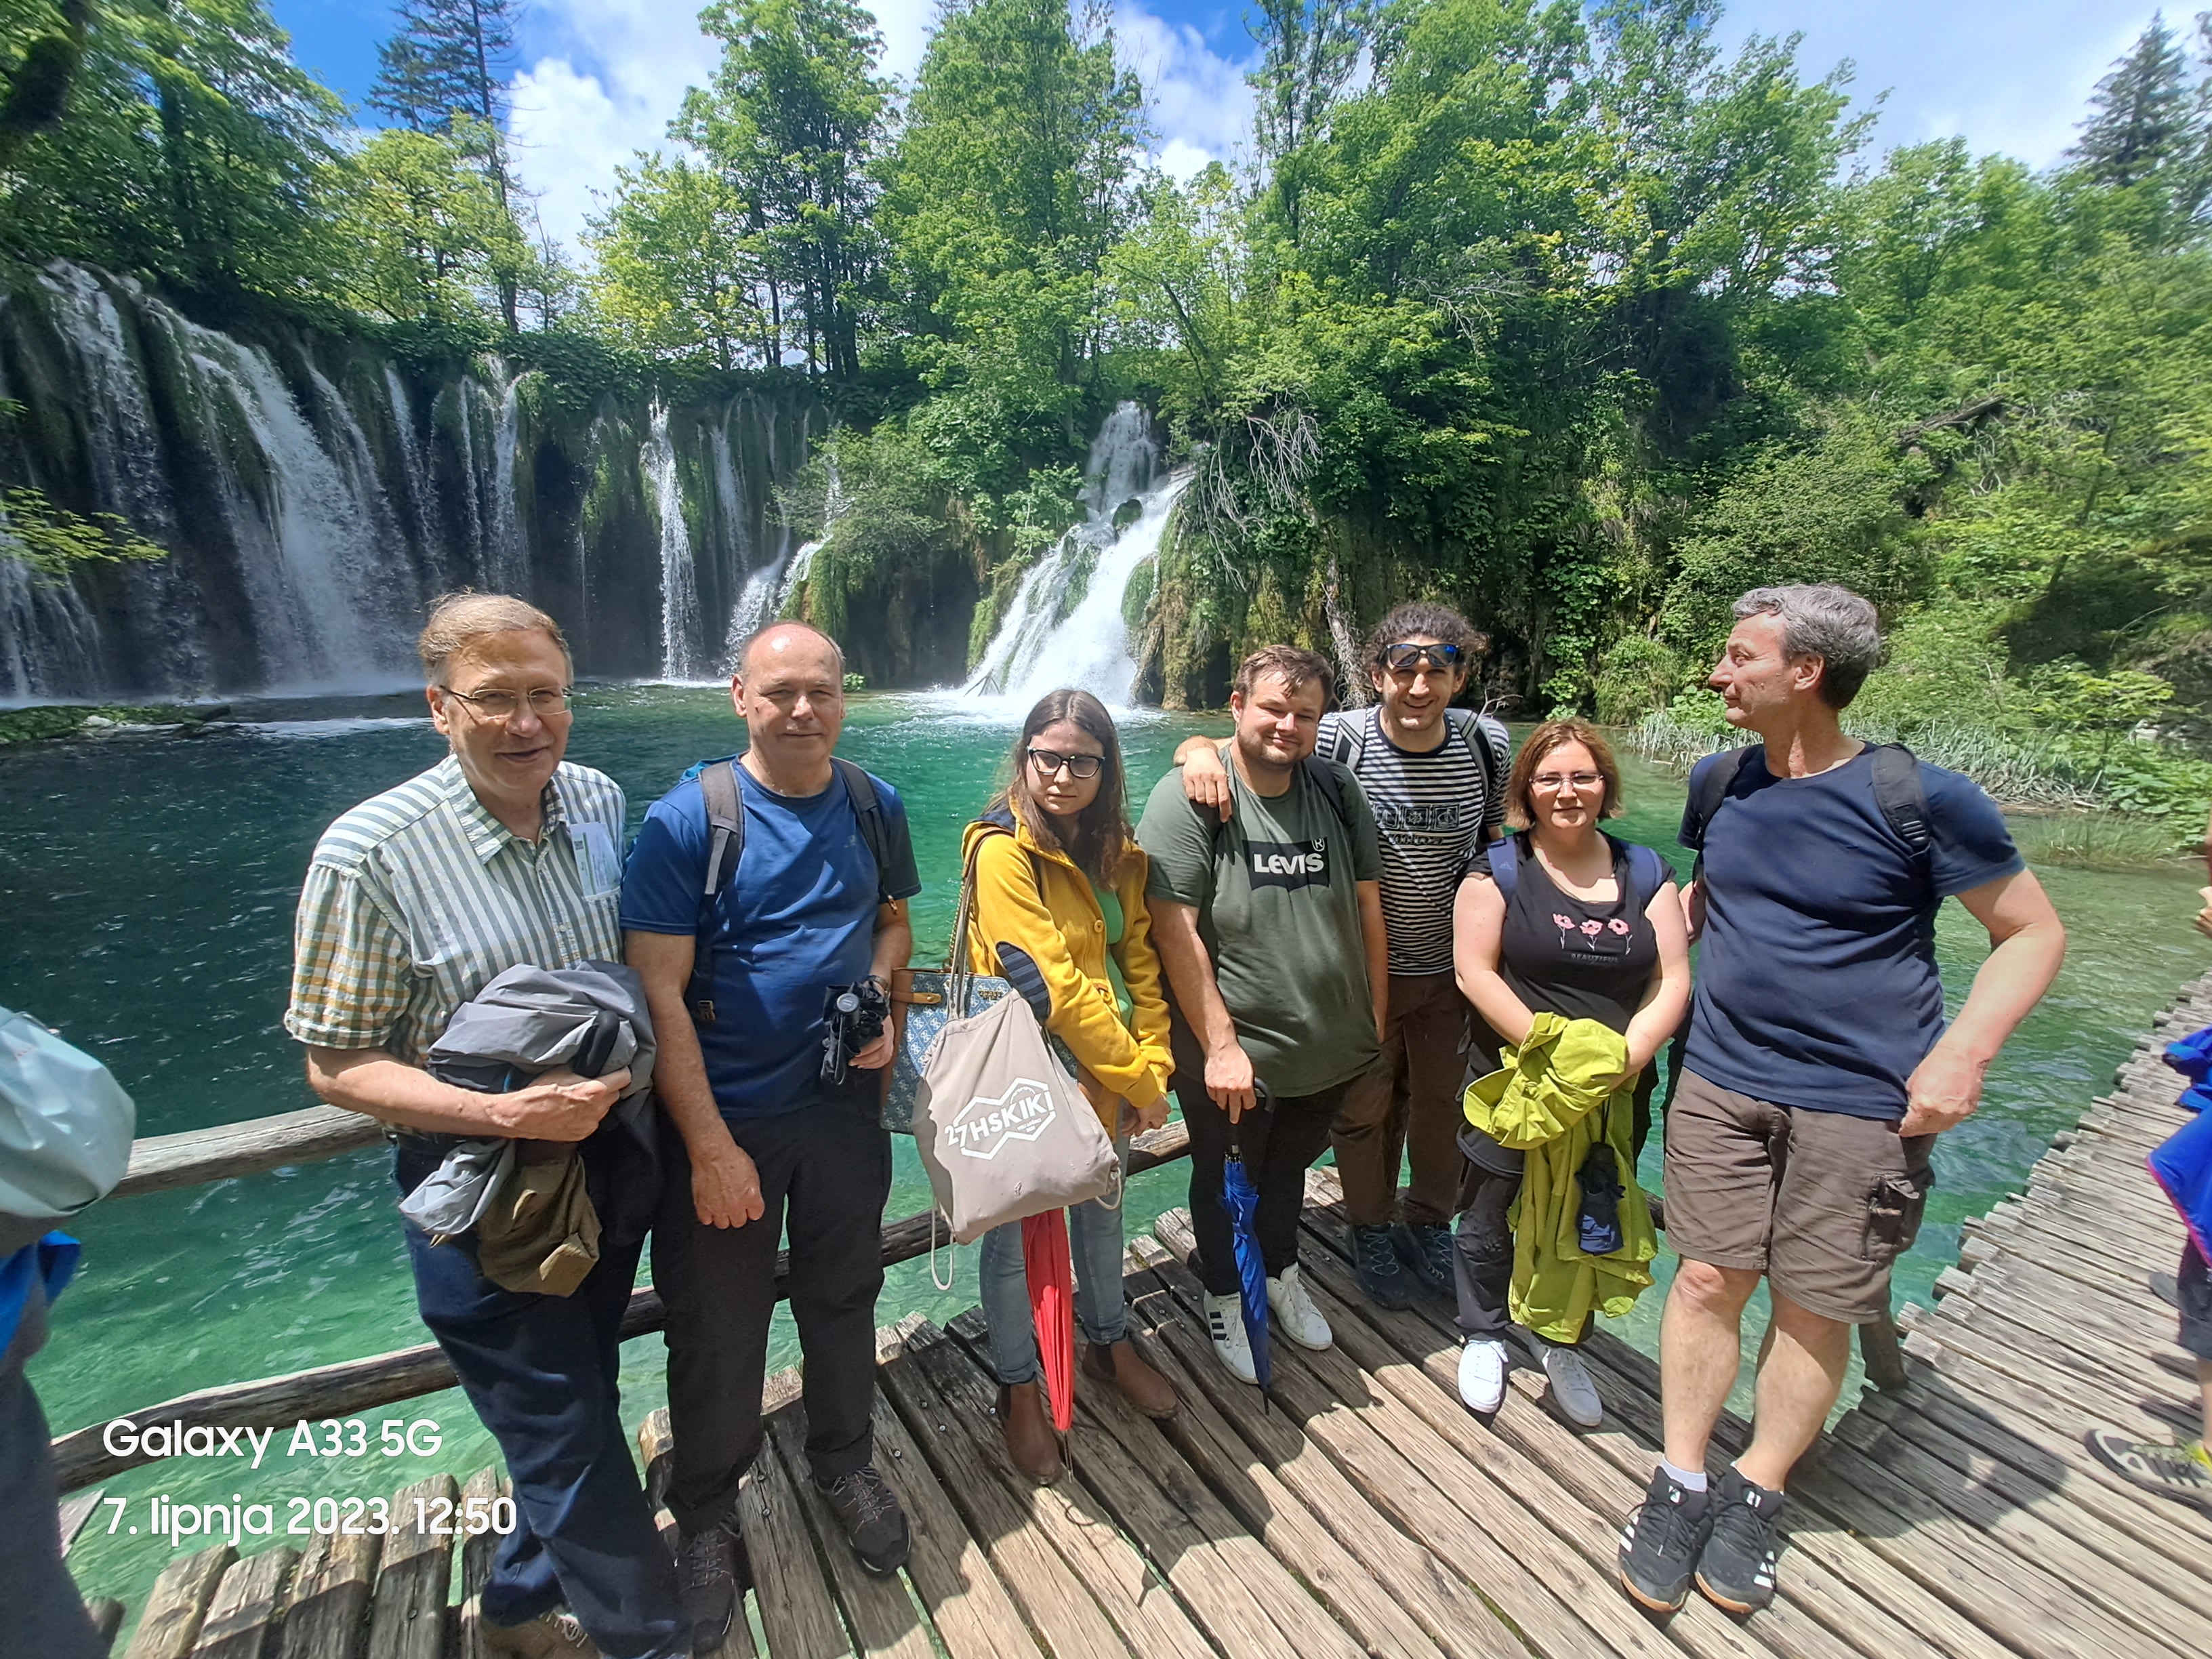 Excursion to Plitvice